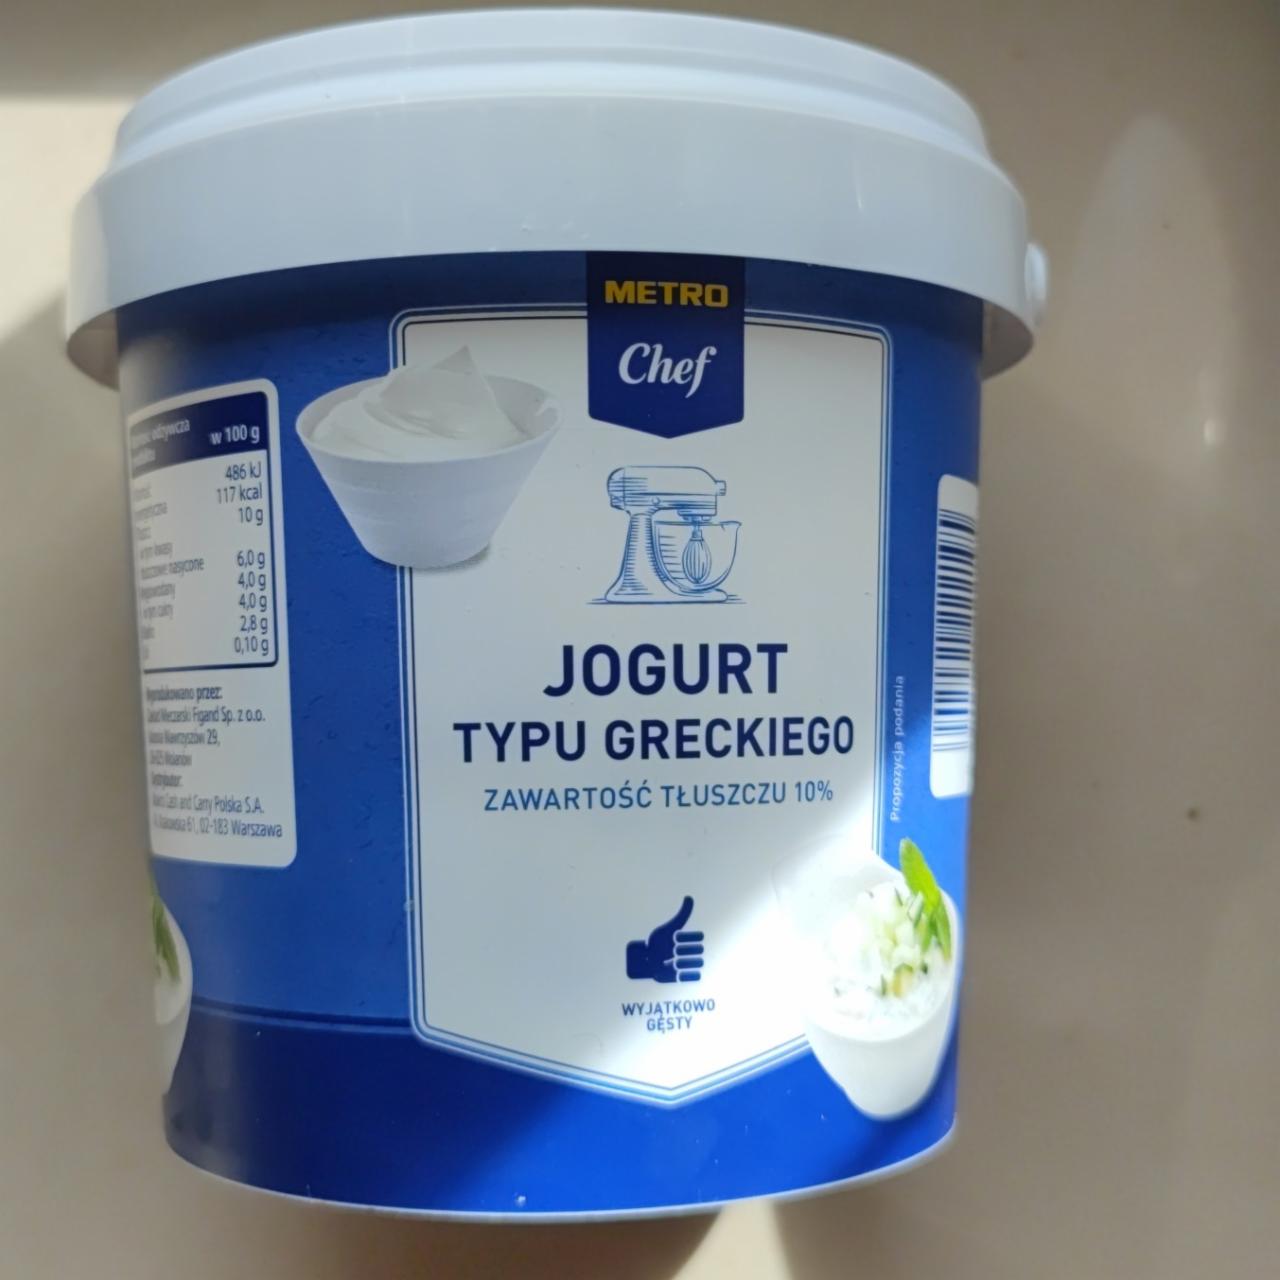 Zdjęcia - Jogurt typu greckiego Metro Chef